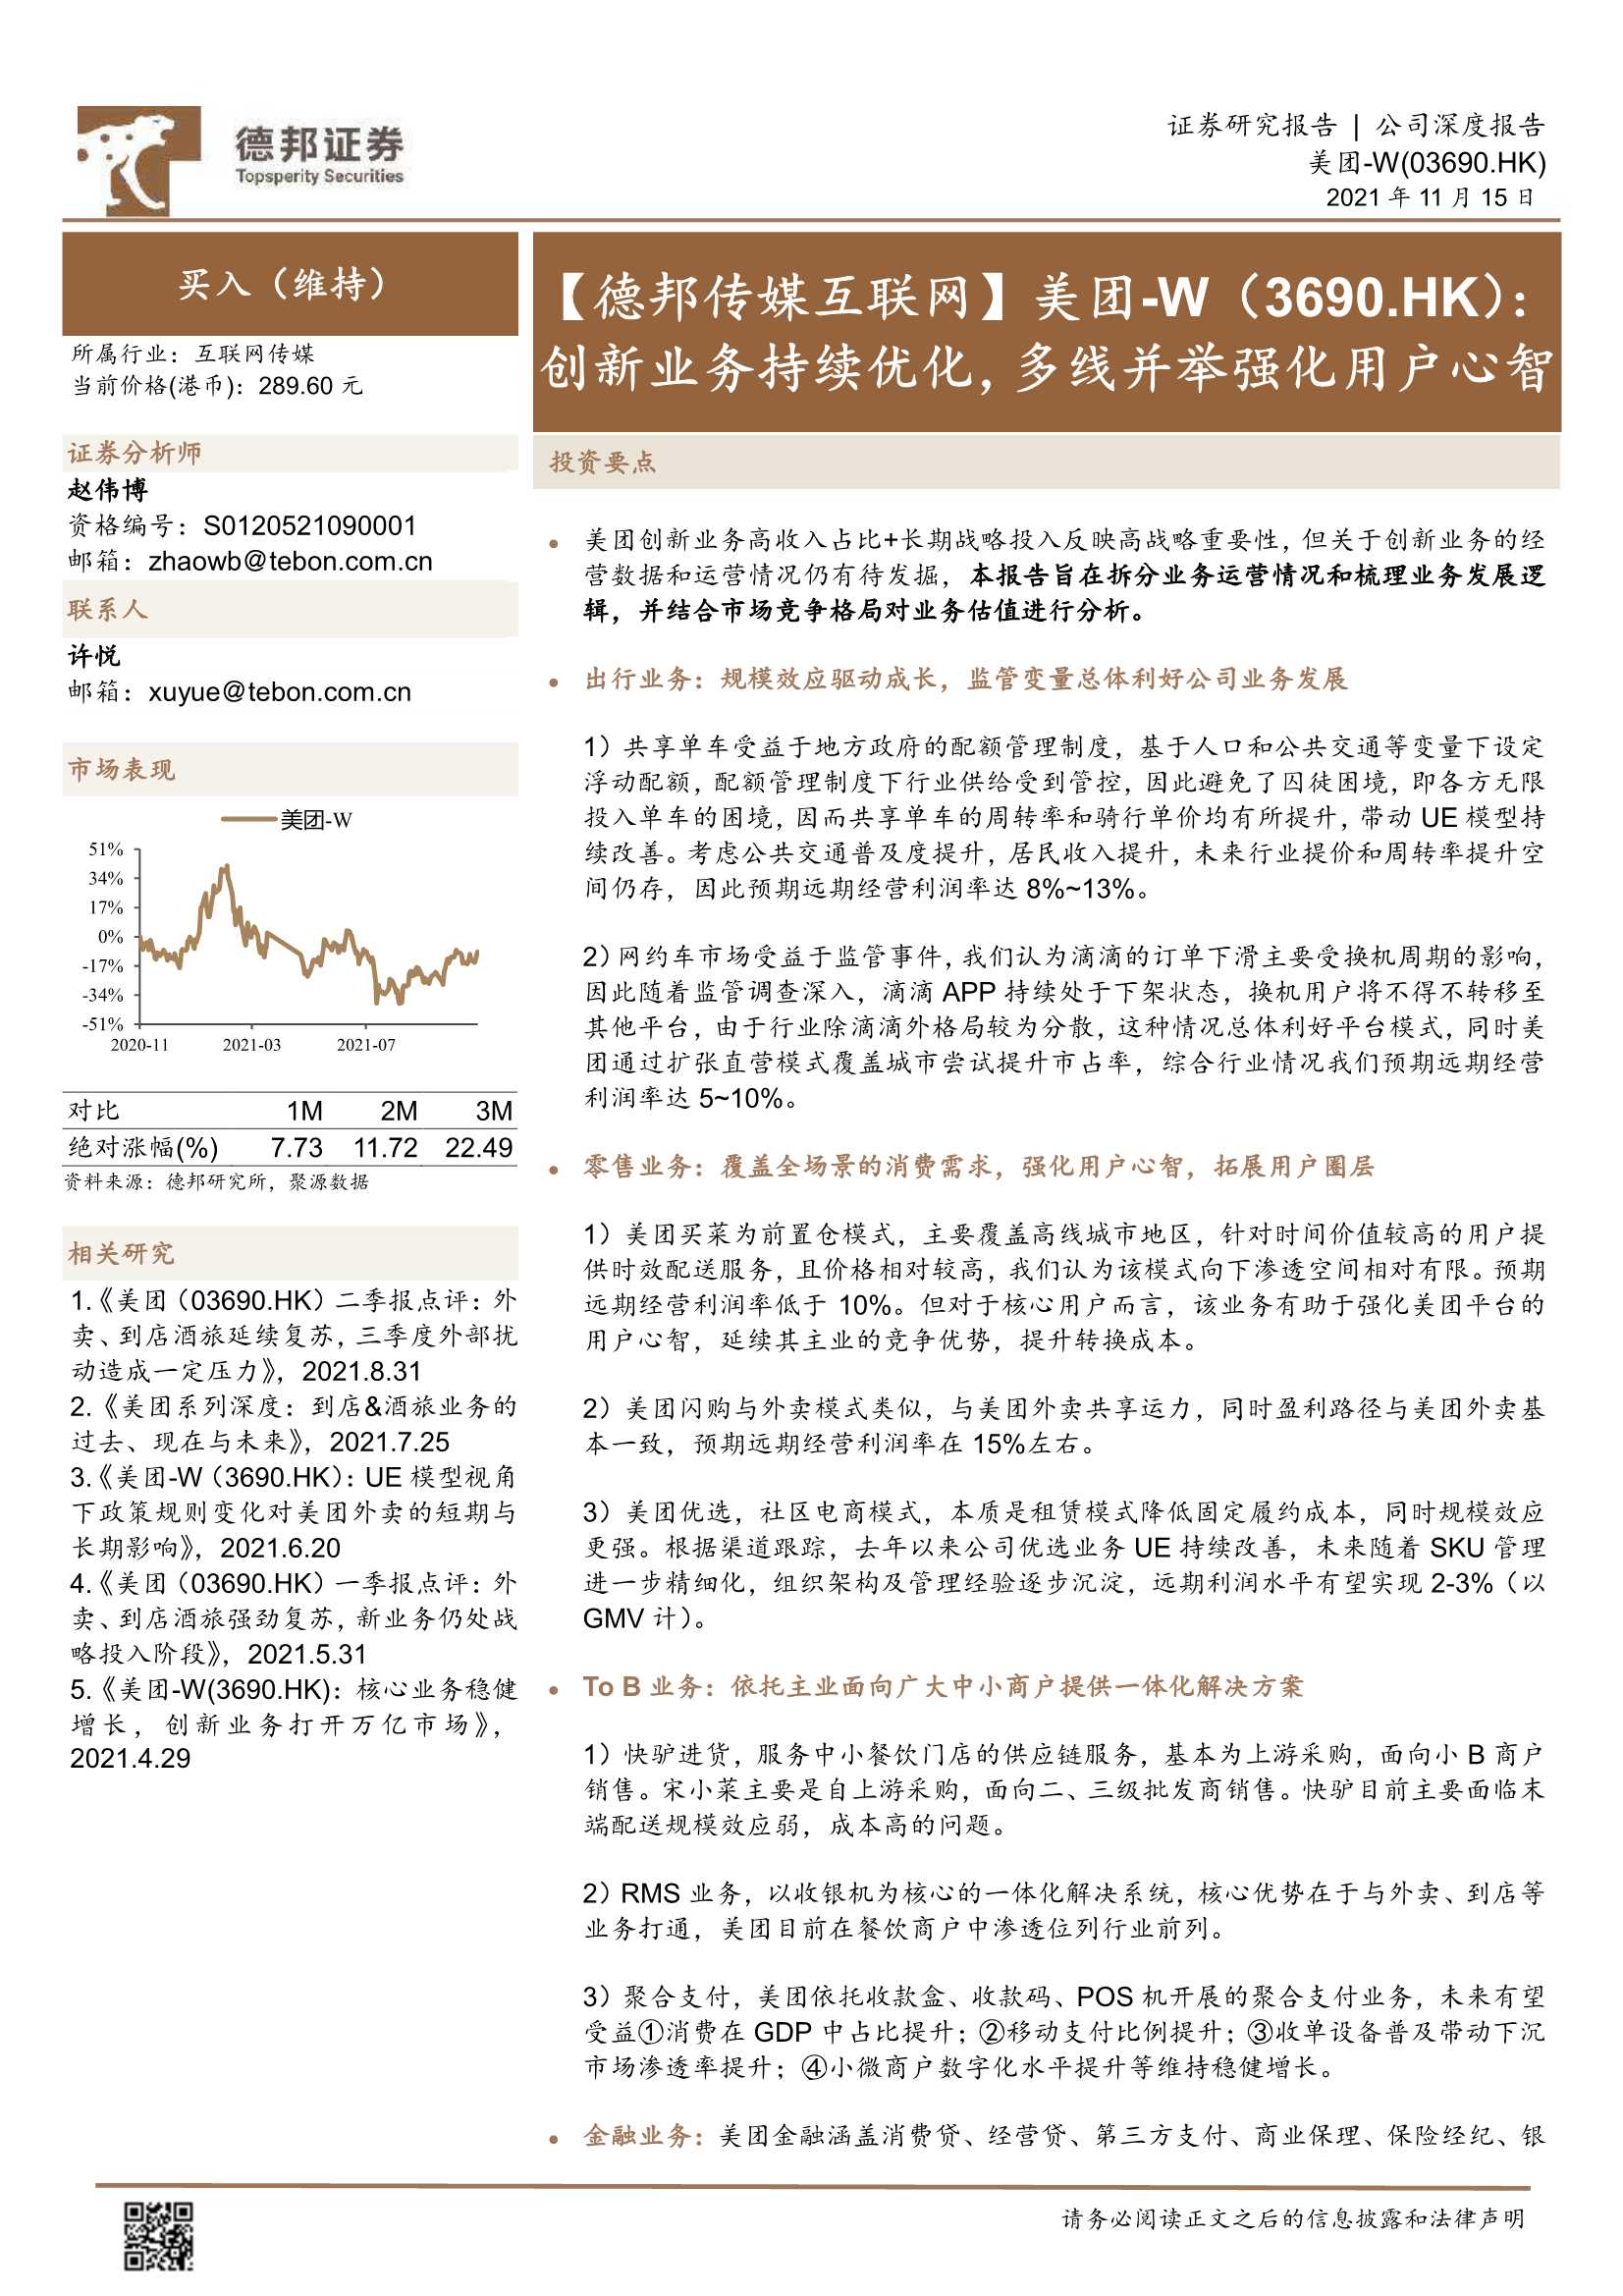 德邦证券-美团~W-3690.HK-创新业务持续优化，多线并举强化用户心智-20211115-54页